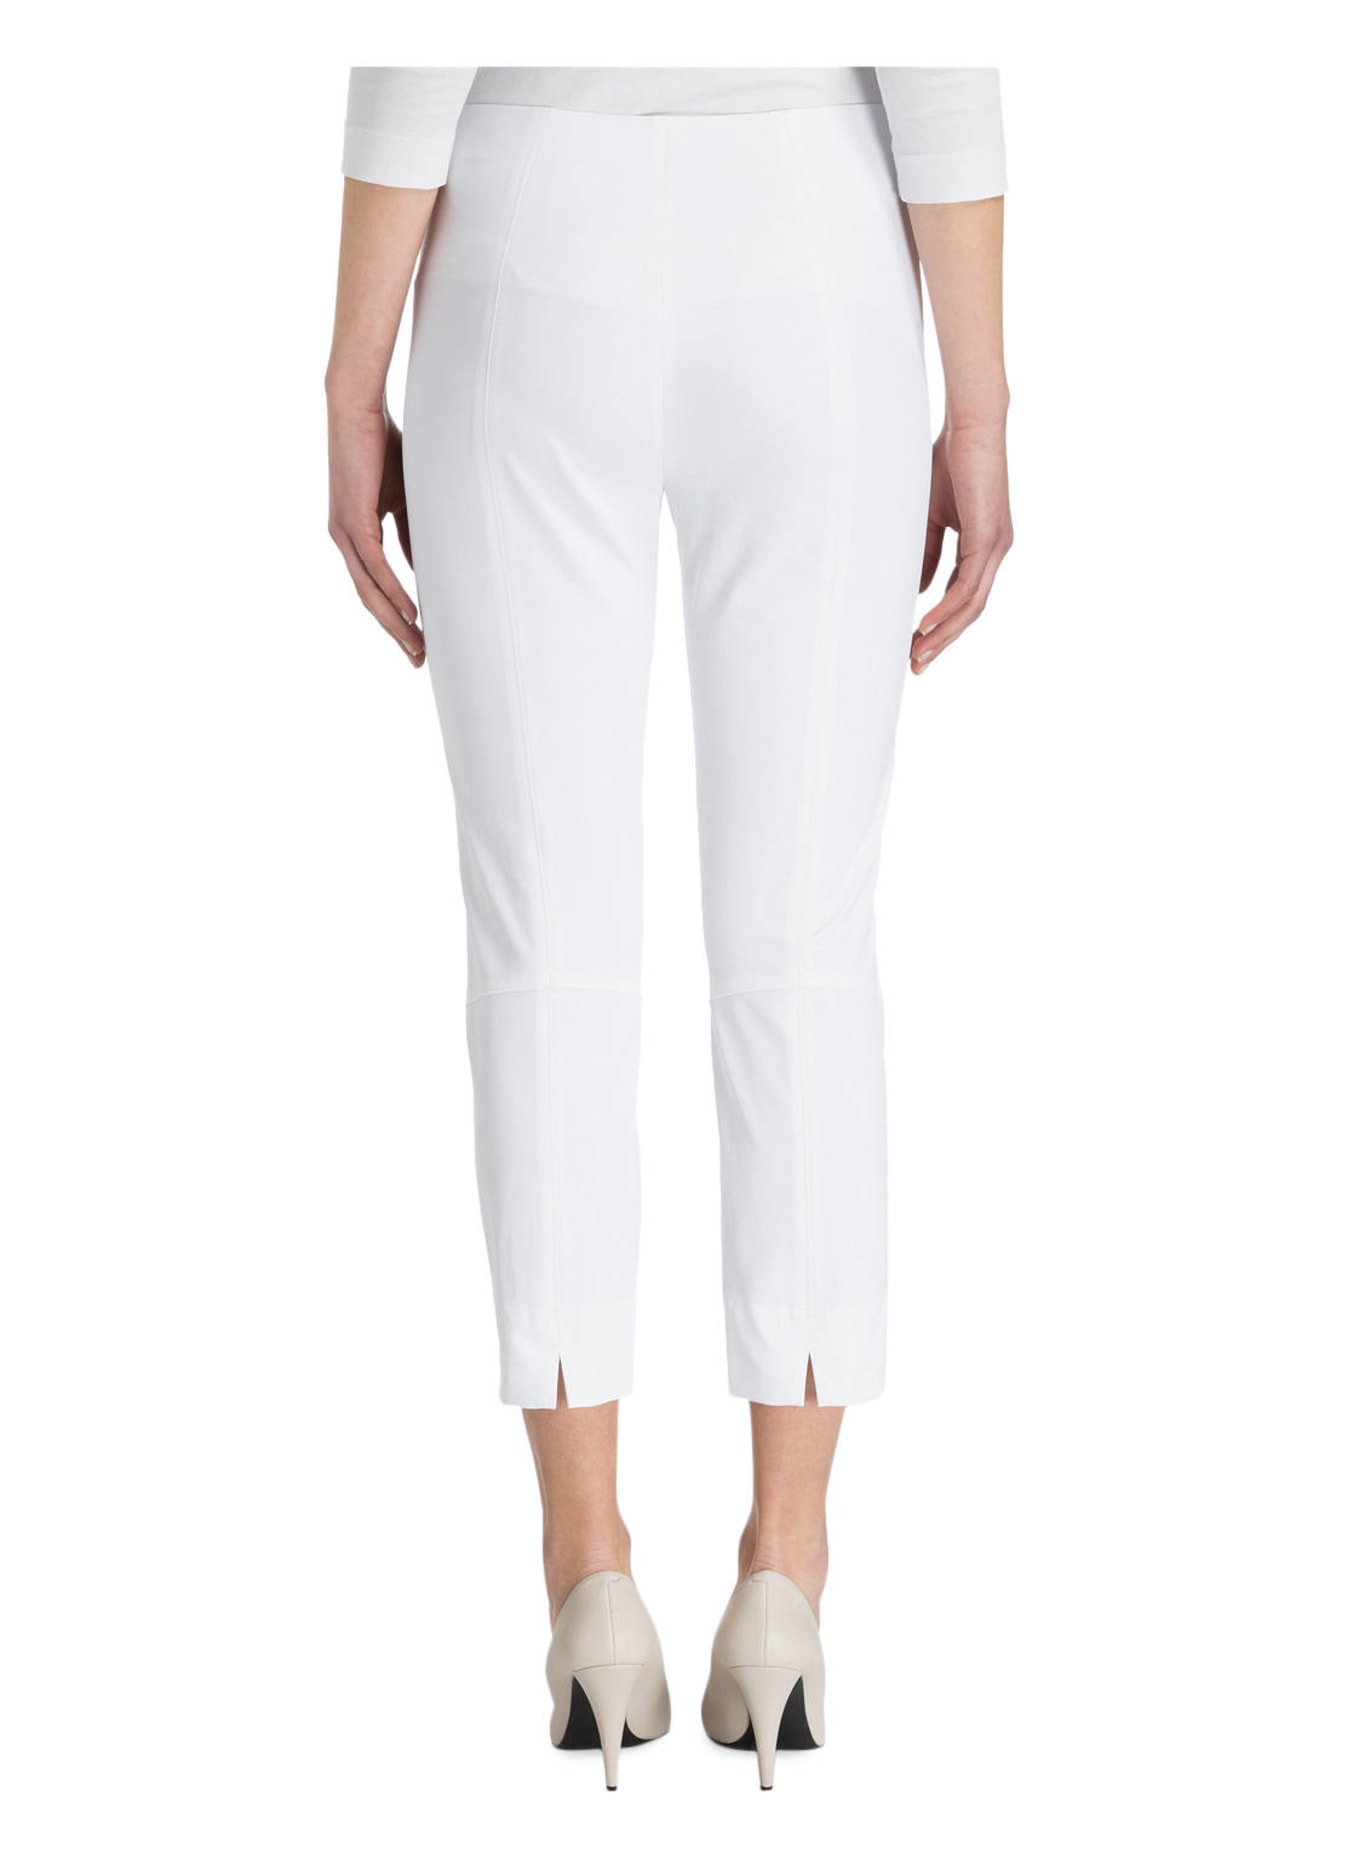 RAFFAELLO ROSSI 7/8 trousers PENNY 6/8, Color: WHITE (Image 3)